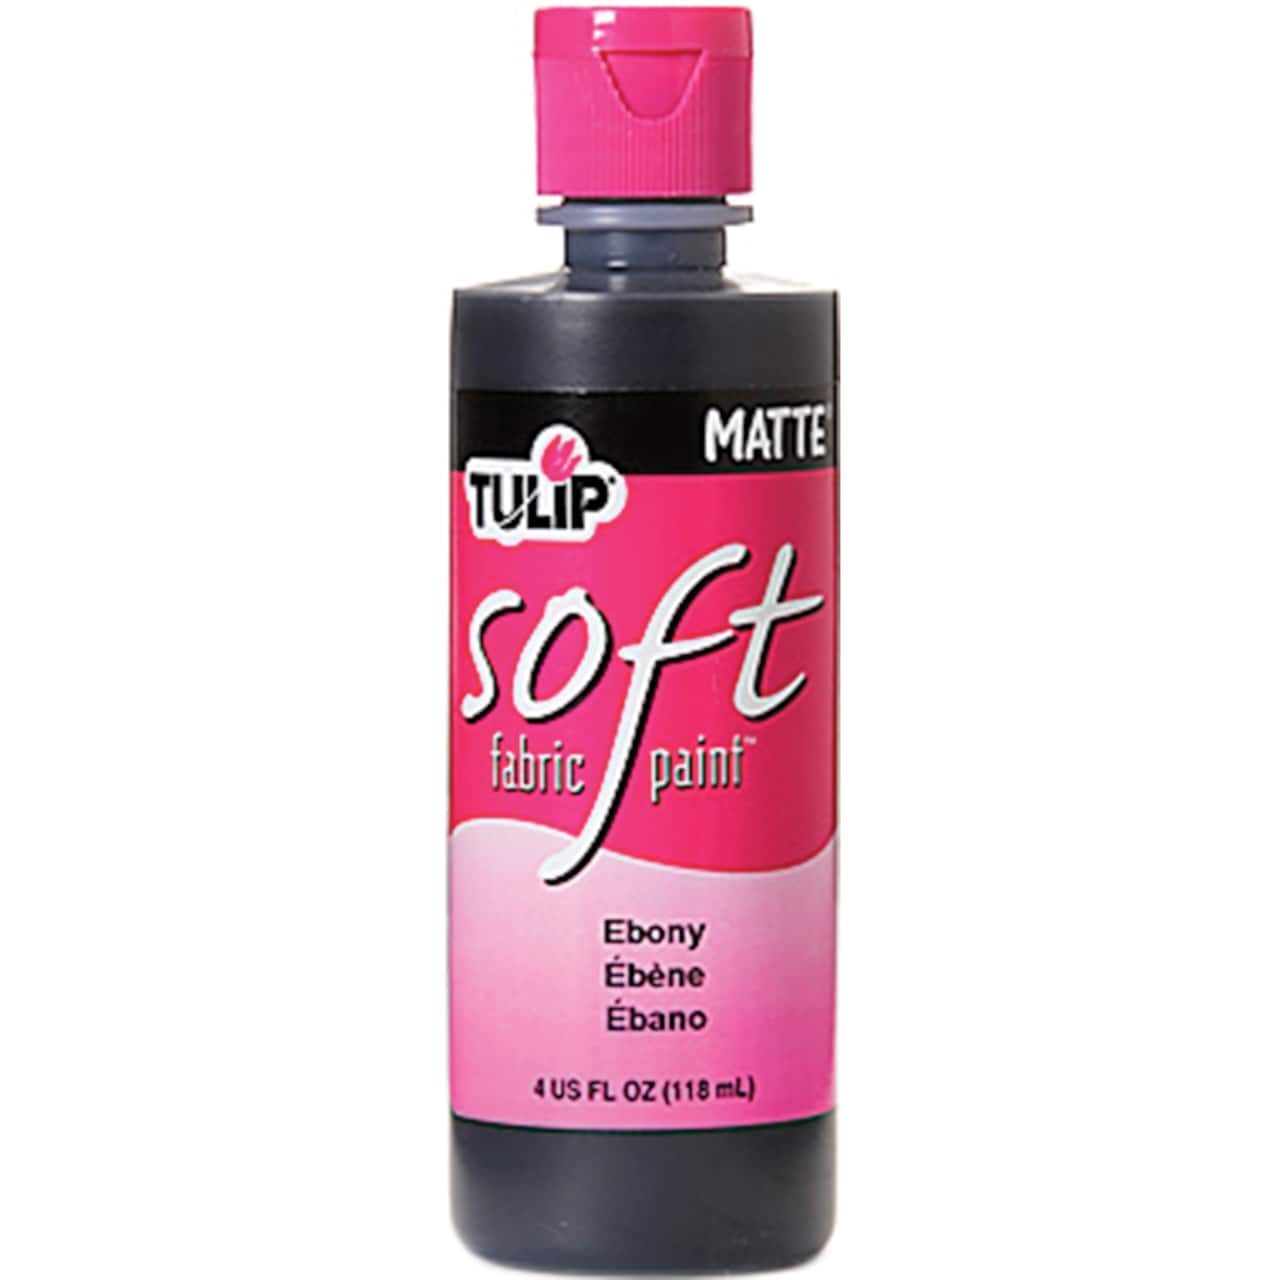 Tulip® Matte Soft Fabric Paint, 4oz.